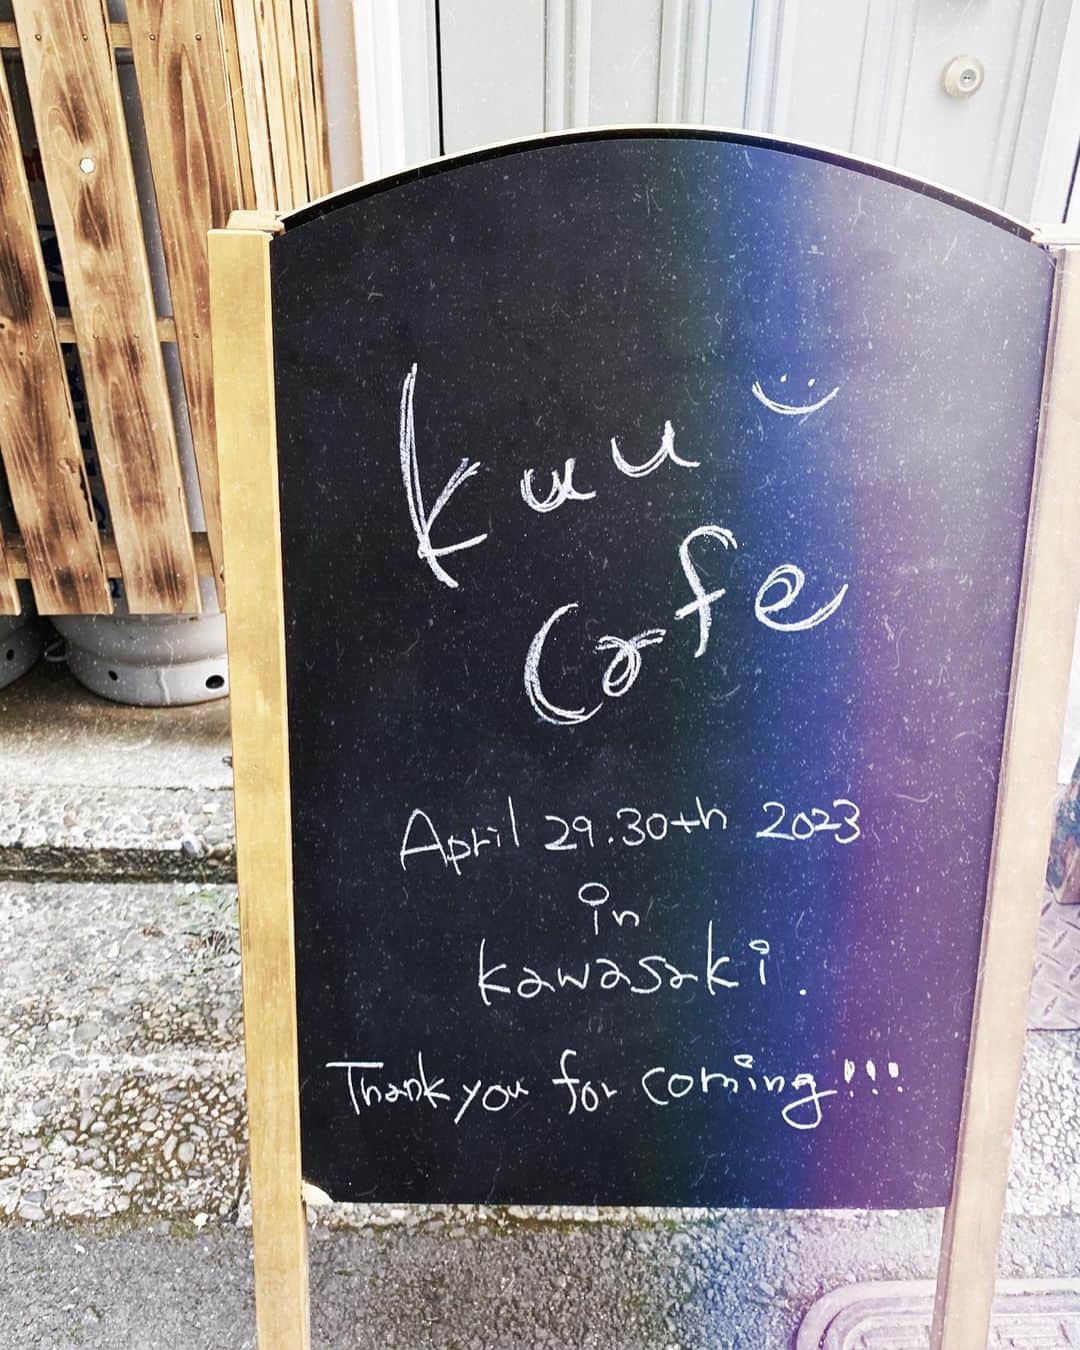 くりかのインスタグラム：「ついに明日から2日間 TAKEOUTcafe【kuu cafe】 openいたします☕️  4/29（土）30（日）12:00〜19:00  【ｋｕｕ ｃａｆｅ】 ☕️川崎市川崎区東田町11-16  ちょっとわかりにくいかもなんやけど 川崎駅から仲見世通りをずっとまっすぐ 行ってもらって突き当たりの直前にある 右にちょっと入れる道に入ったところの グリーンの可愛い扉が目印です🌱  ブランド立ち上げるときに 最初に掲げたテーマがcafe&fashion ｈａｐｐｙな2日間になるようにがんばる☺️☕️  ぜひ遊びにきてね♡  #kuucafe」